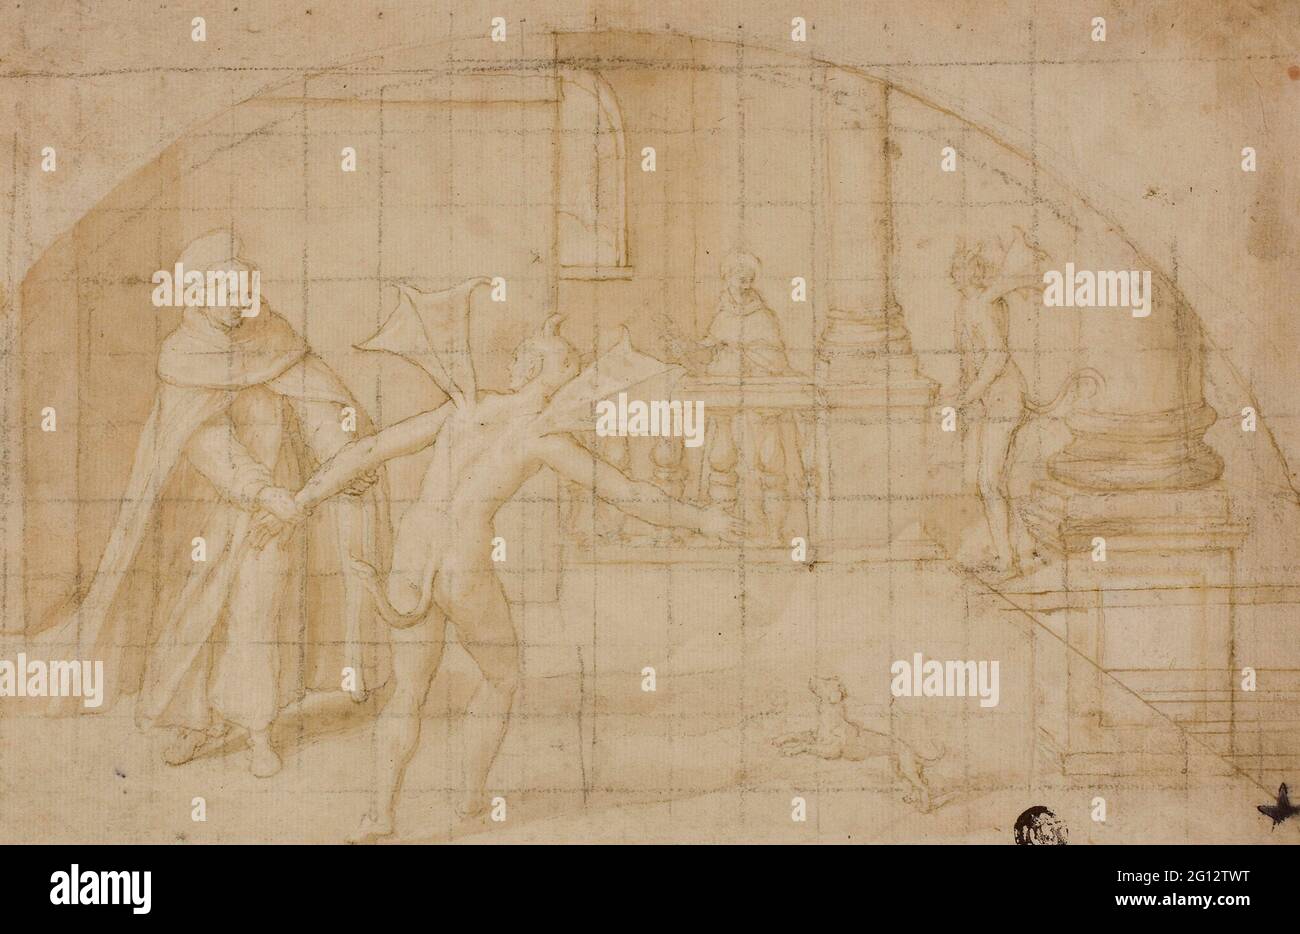 Bernardino Poccetti. Entwurf für eine Lunette: Teufel und Heiliger in einem Kloster - 1604/12 - zugeschrieben Bernardino Poccetti Italienisch, 1548-1612. Stift und Stockfoto